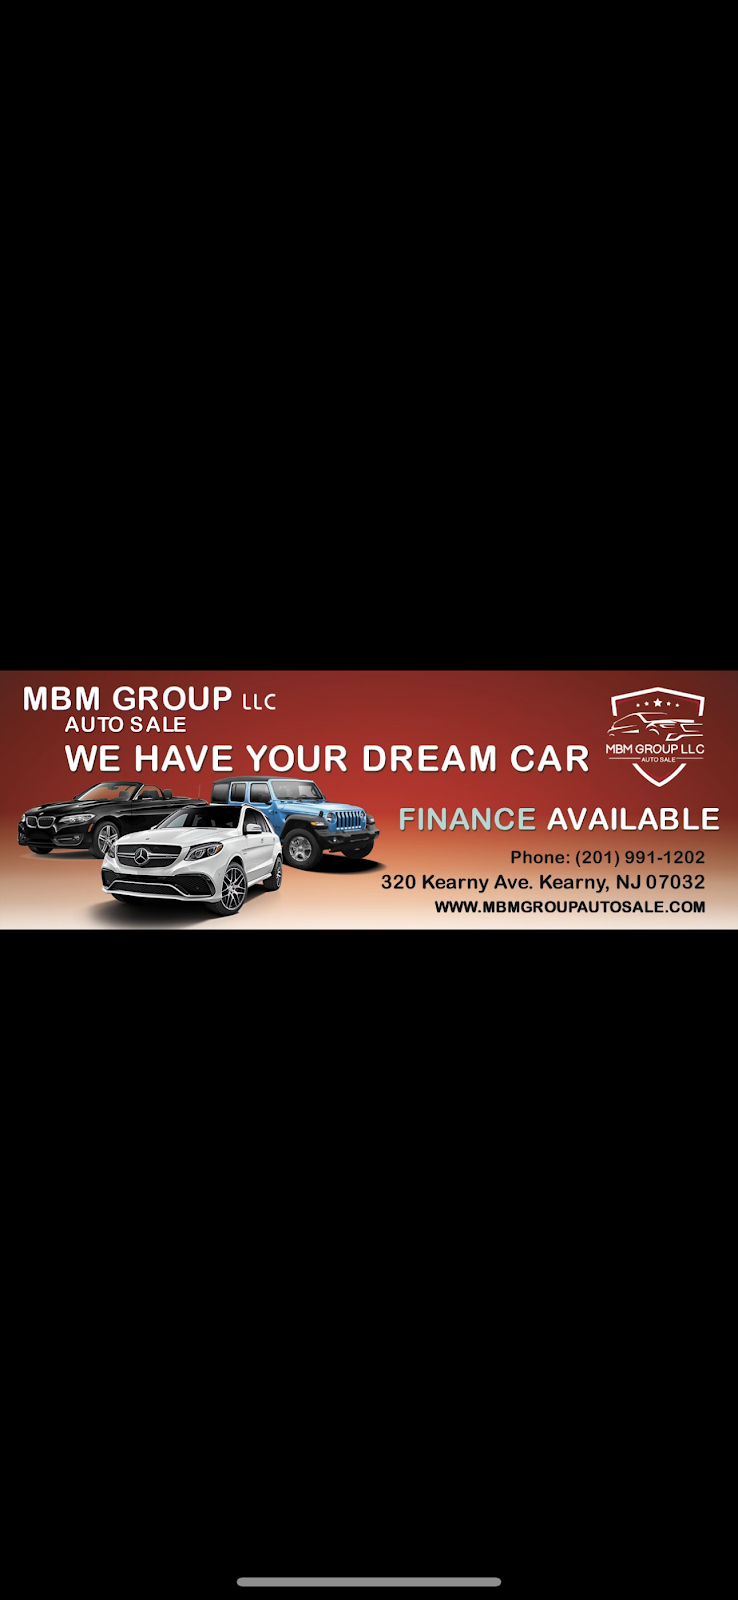 Mbm group auto sales | 320 Kearny Ave, Kearny, NJ 07032 | Phone: (201) 991-1202